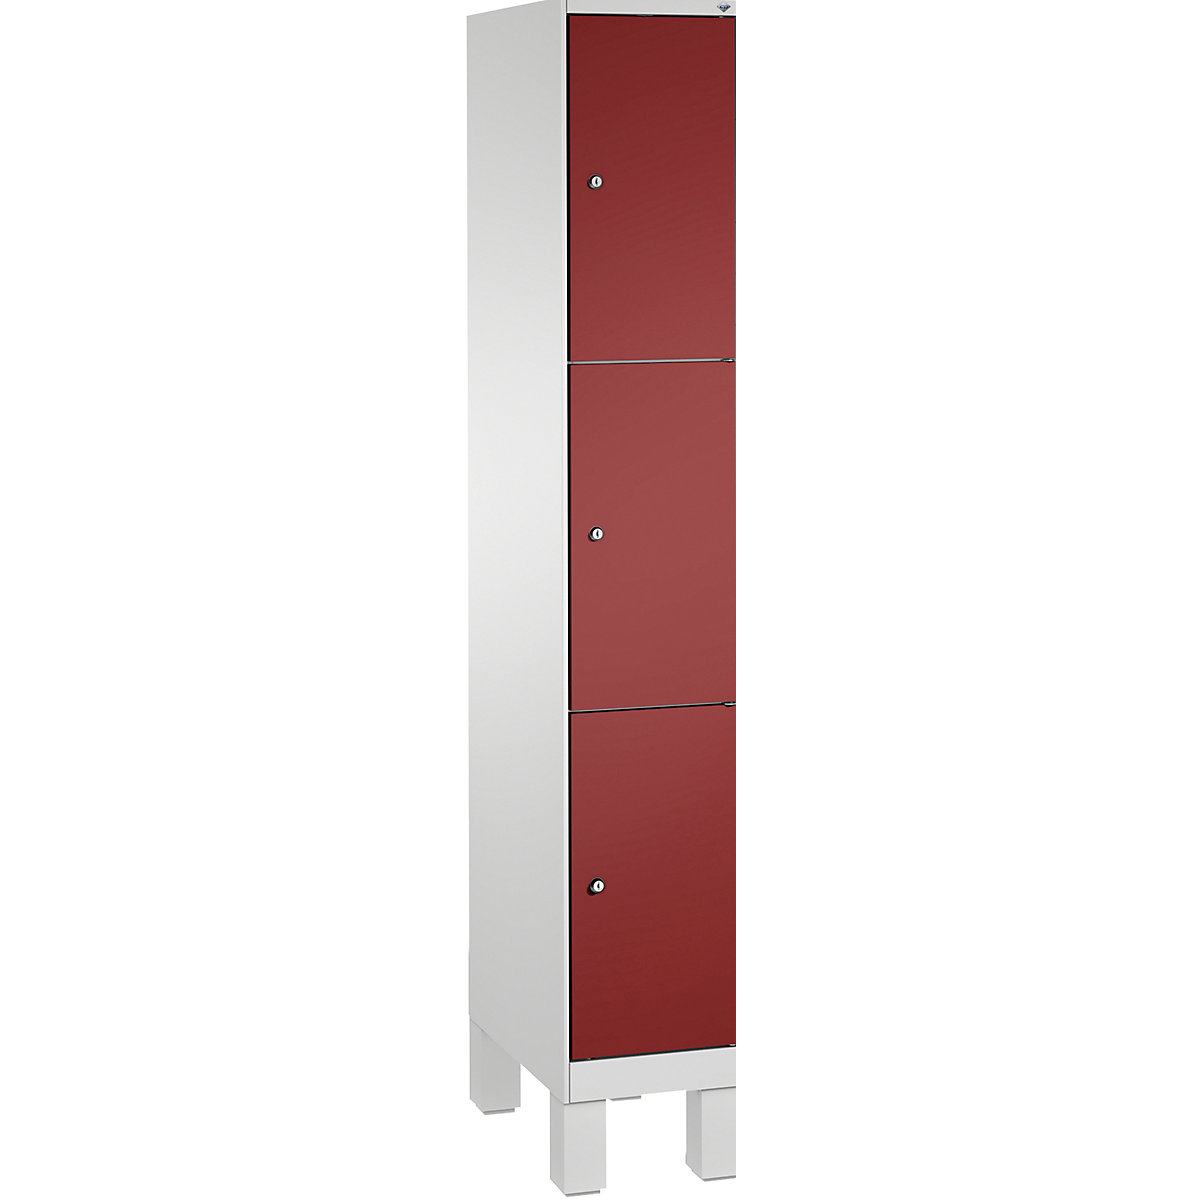 Armoire à casiers sur pieds EVOLO – C+P, 1 compartiment, 3 casiers, largeur compartiment 300 mm, gris clair / rouge rubis-2